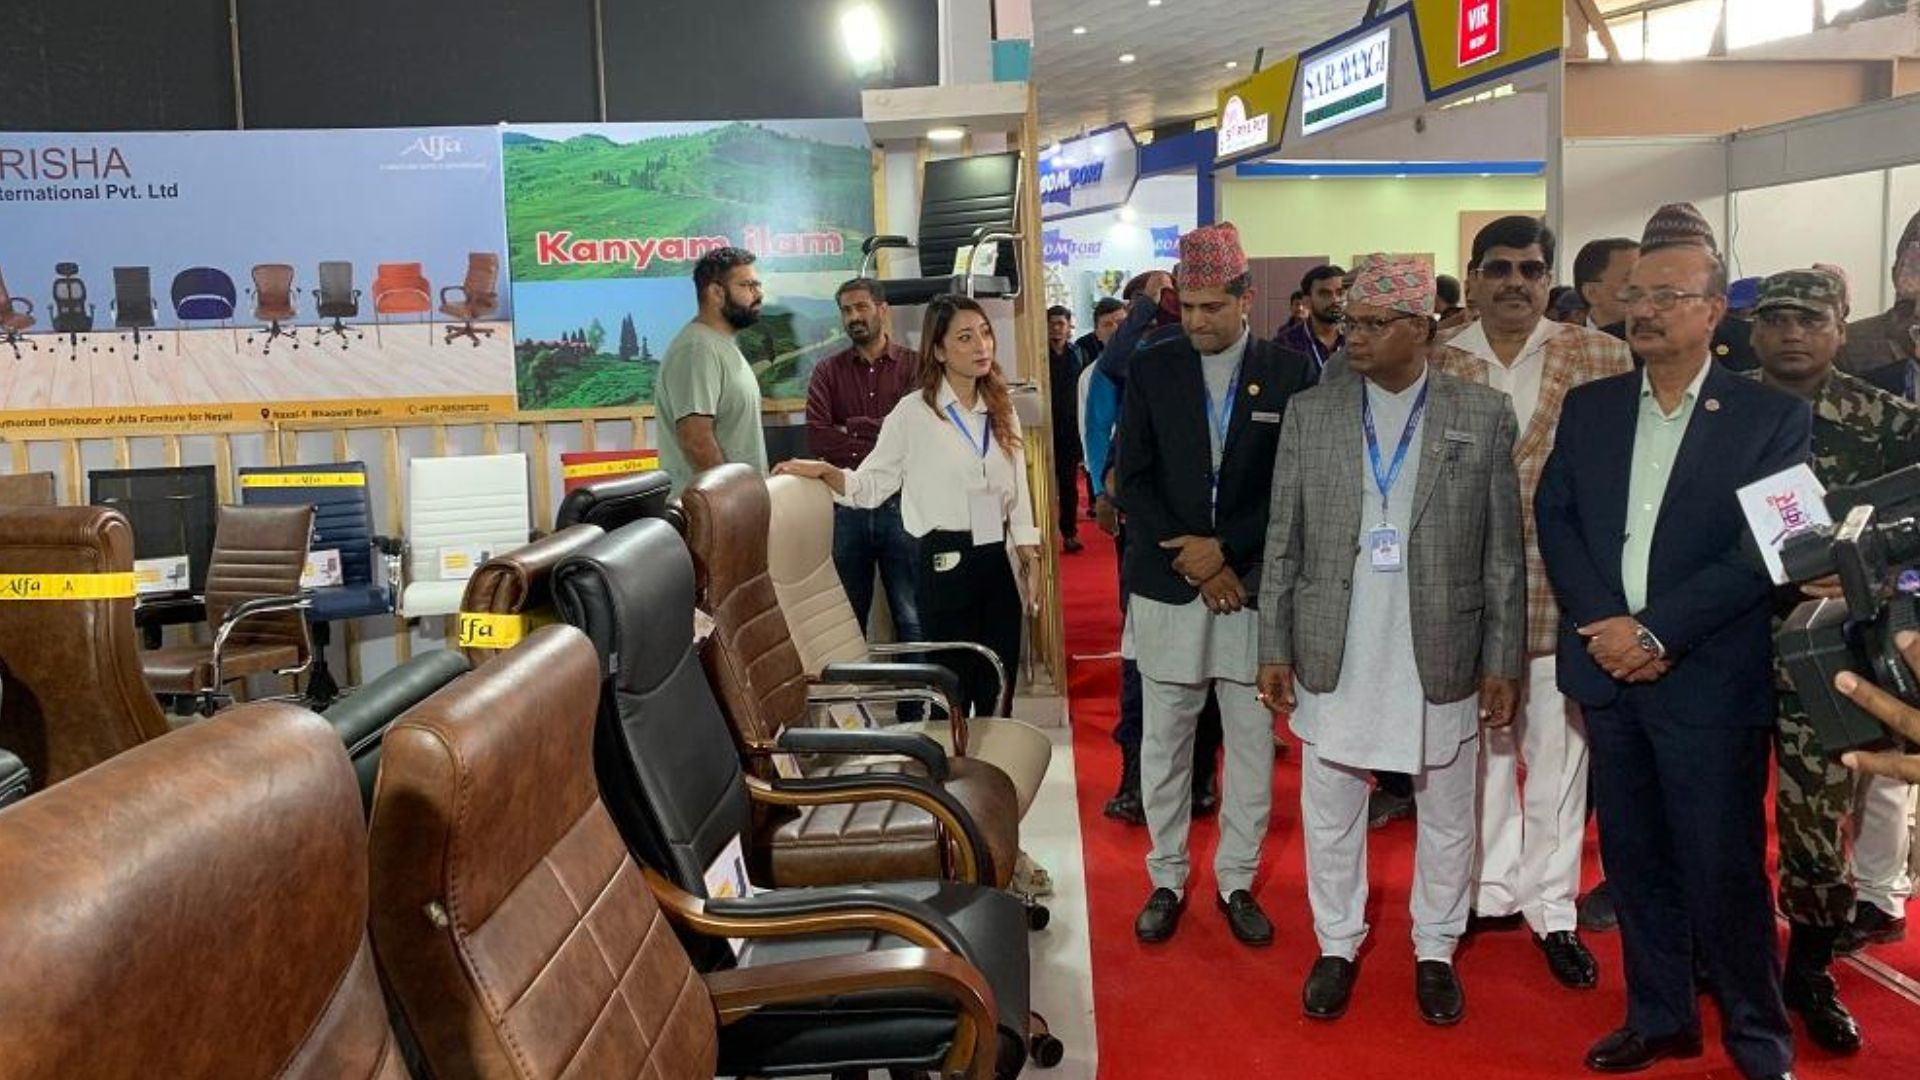 Furniture Expo begins at Bhrikutimandap